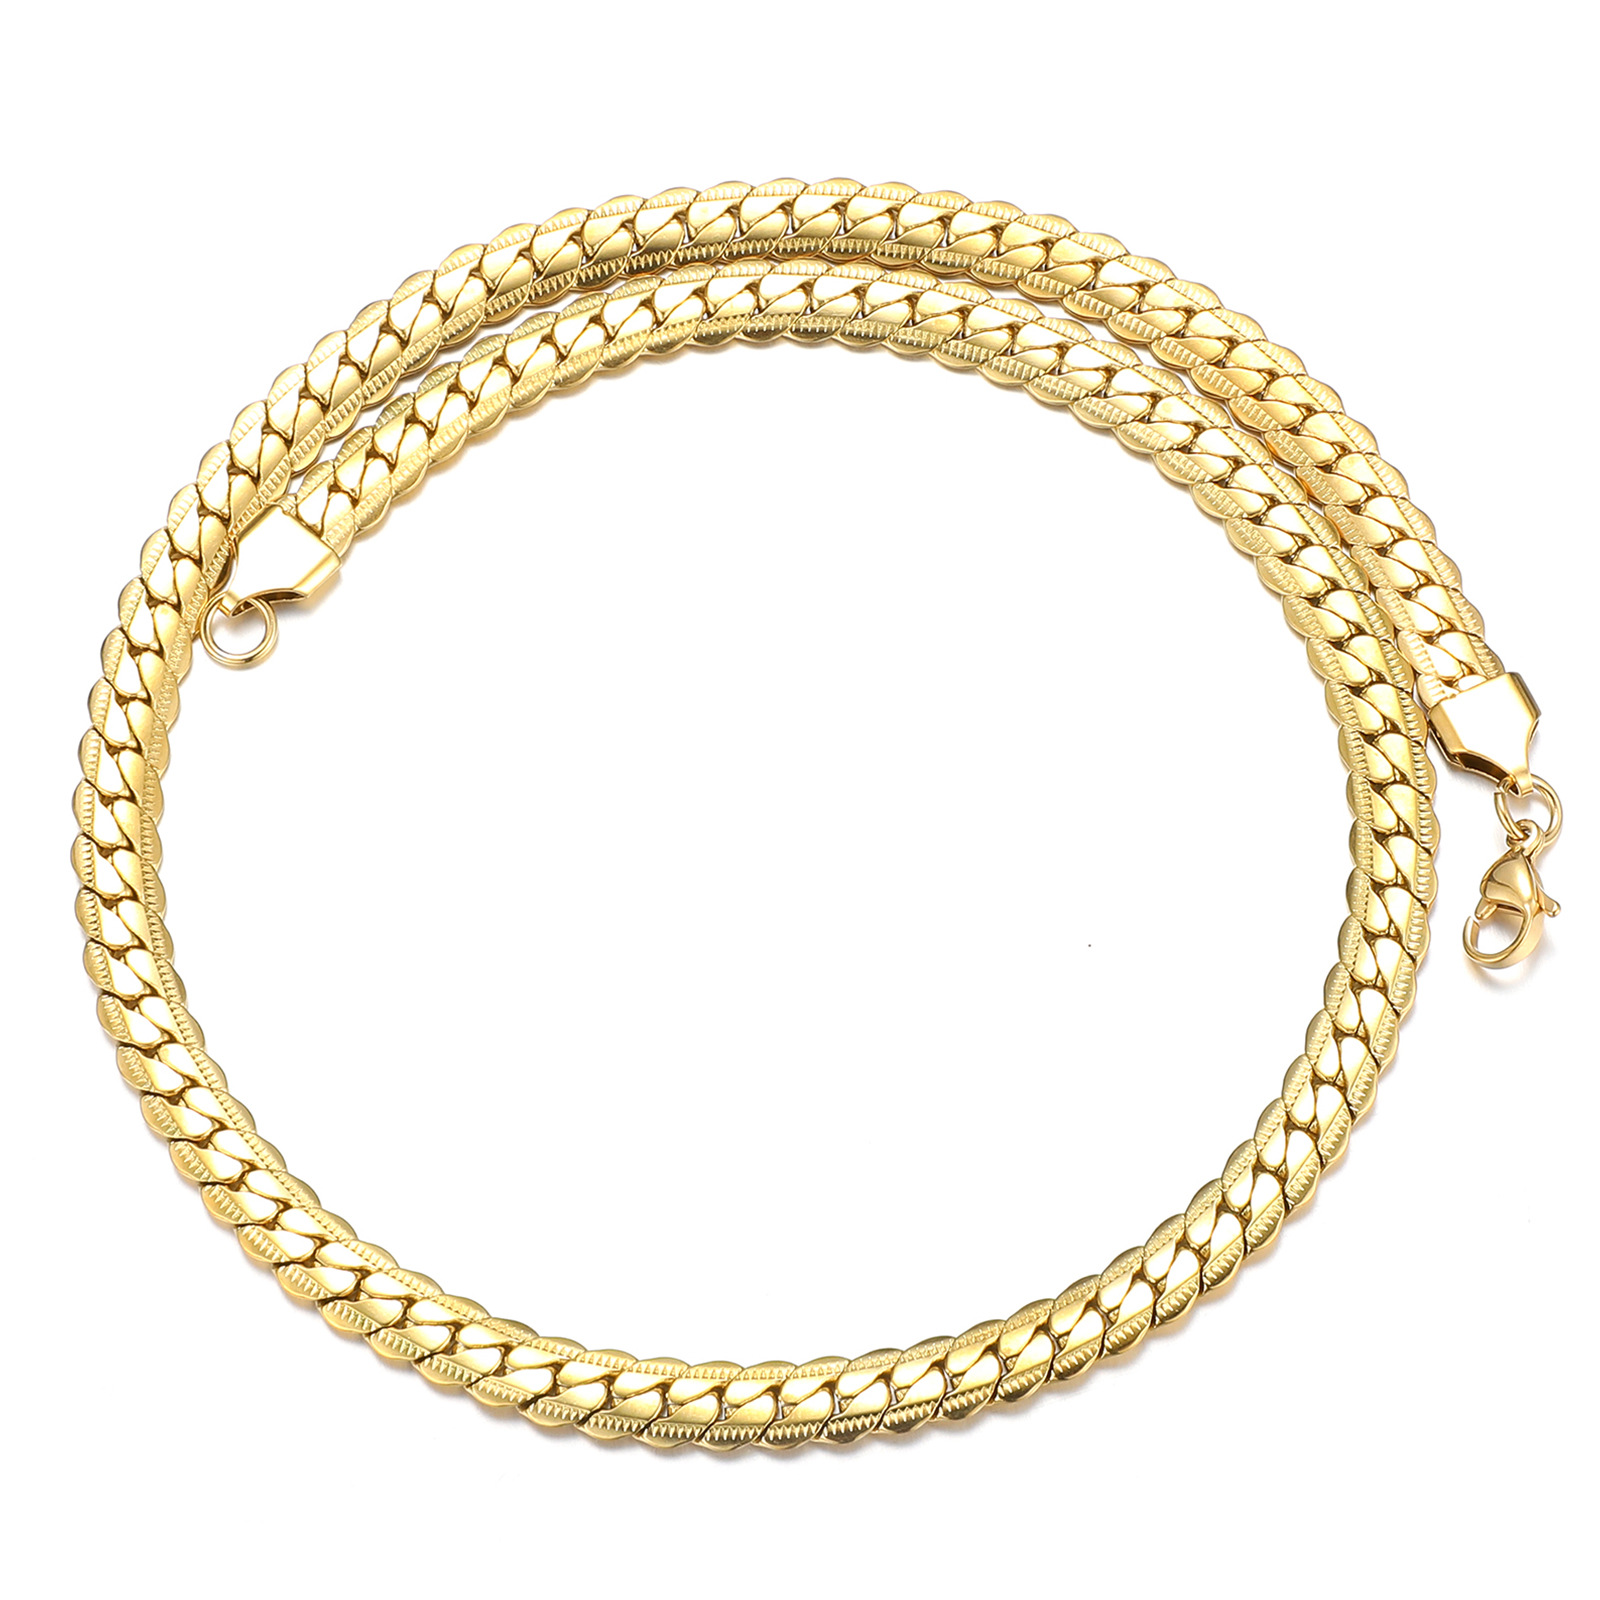 Gold necklace (45cm long)